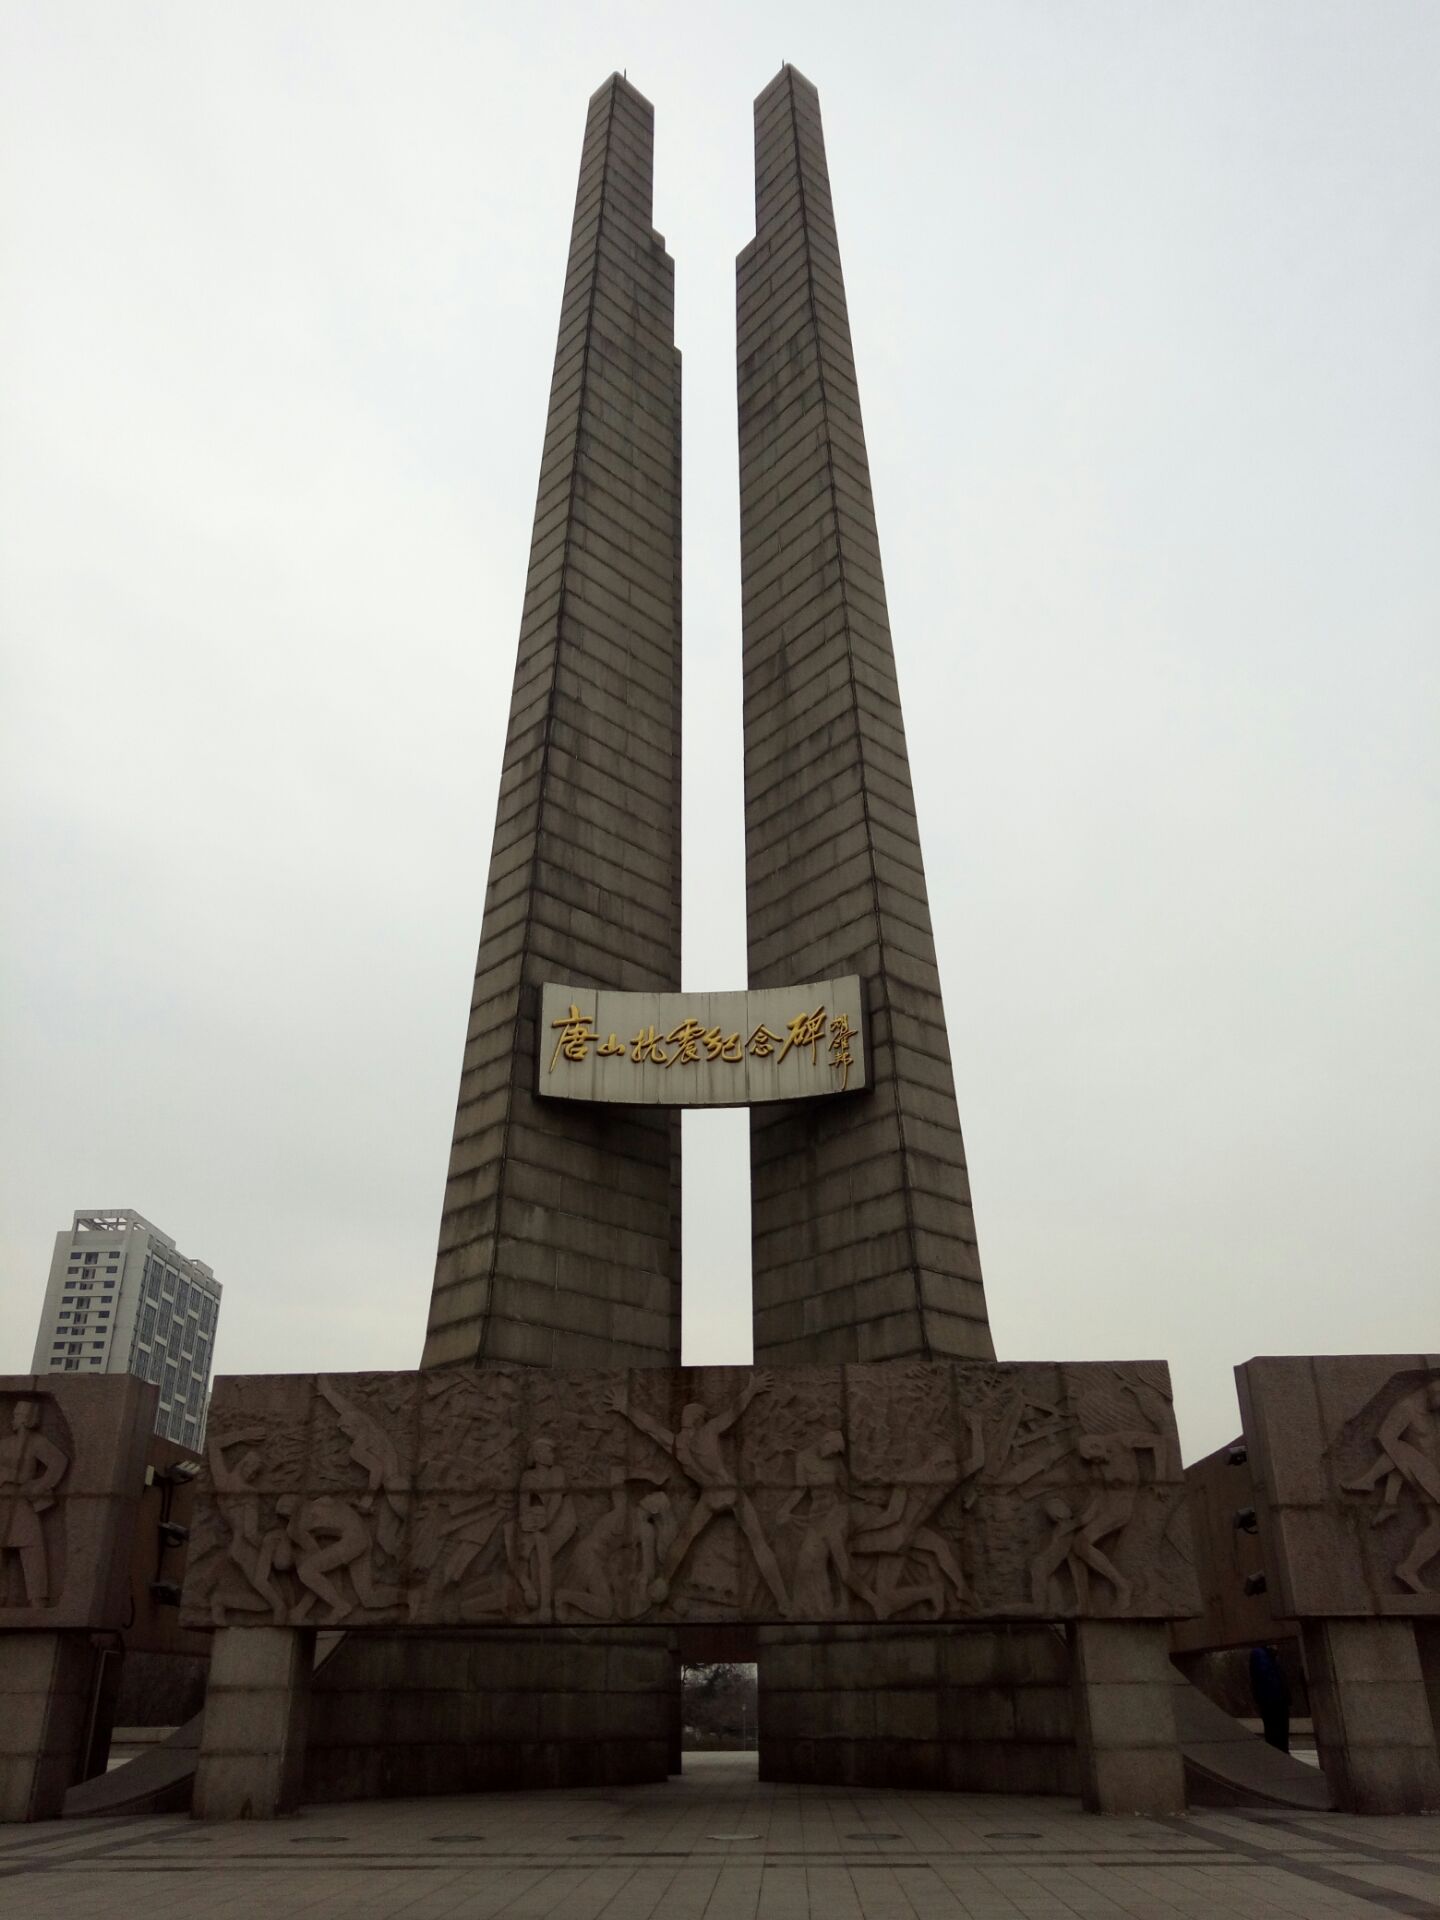 唐山抗震纪念碑广场唐山抗震纪念碑广场Tangshankangzhen Monument Square